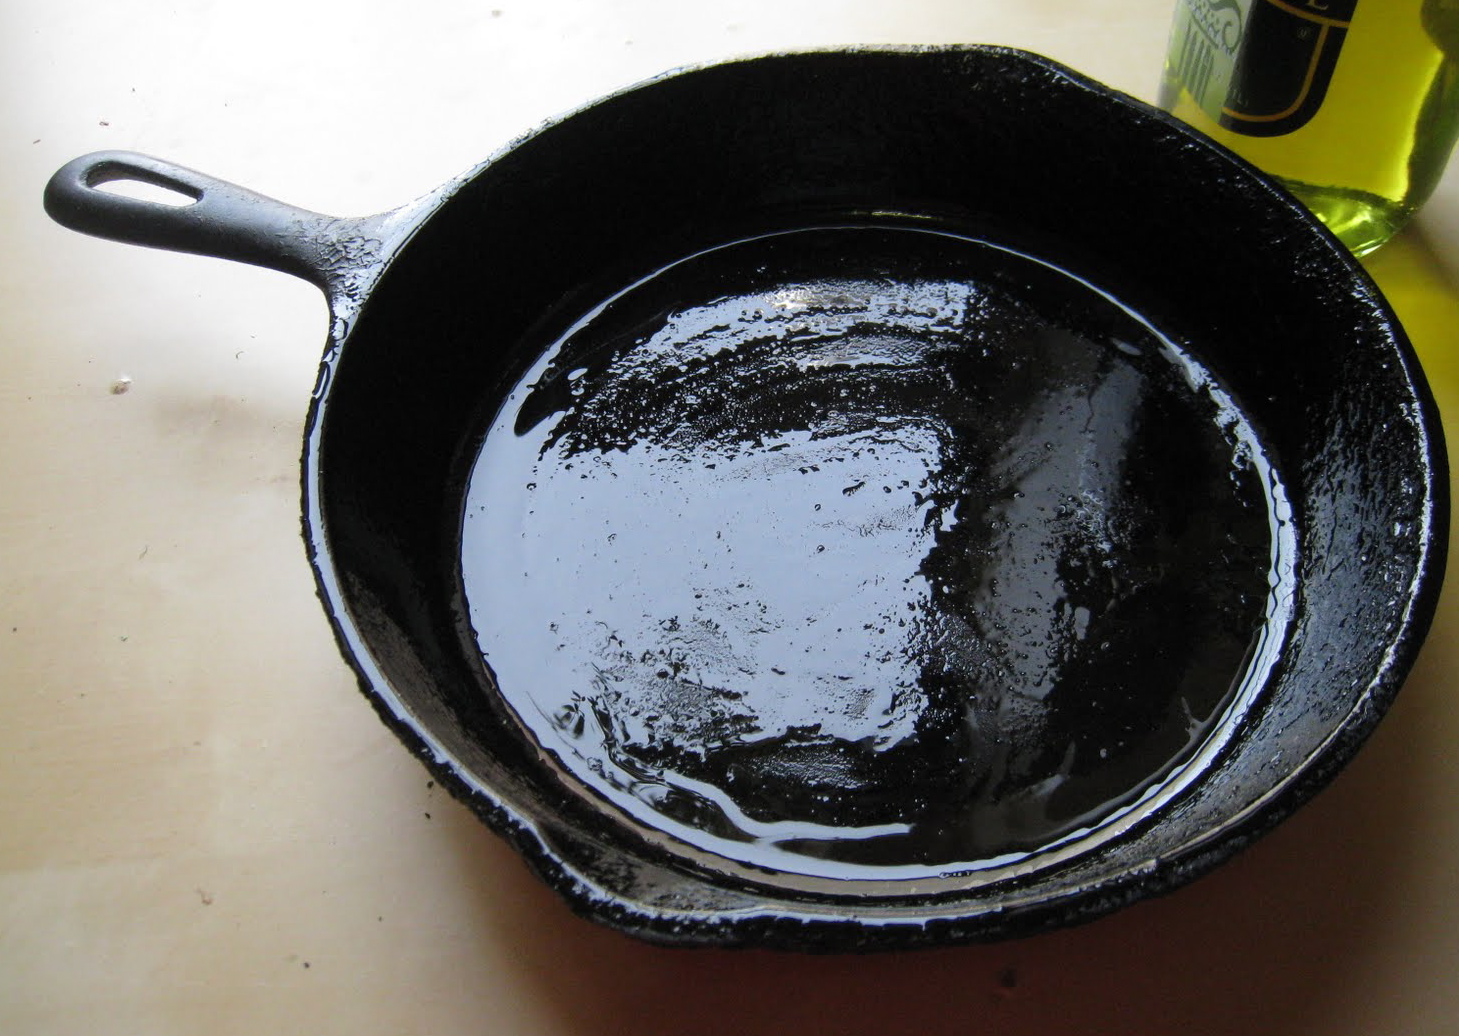 How do you season a cast iron frying pan?